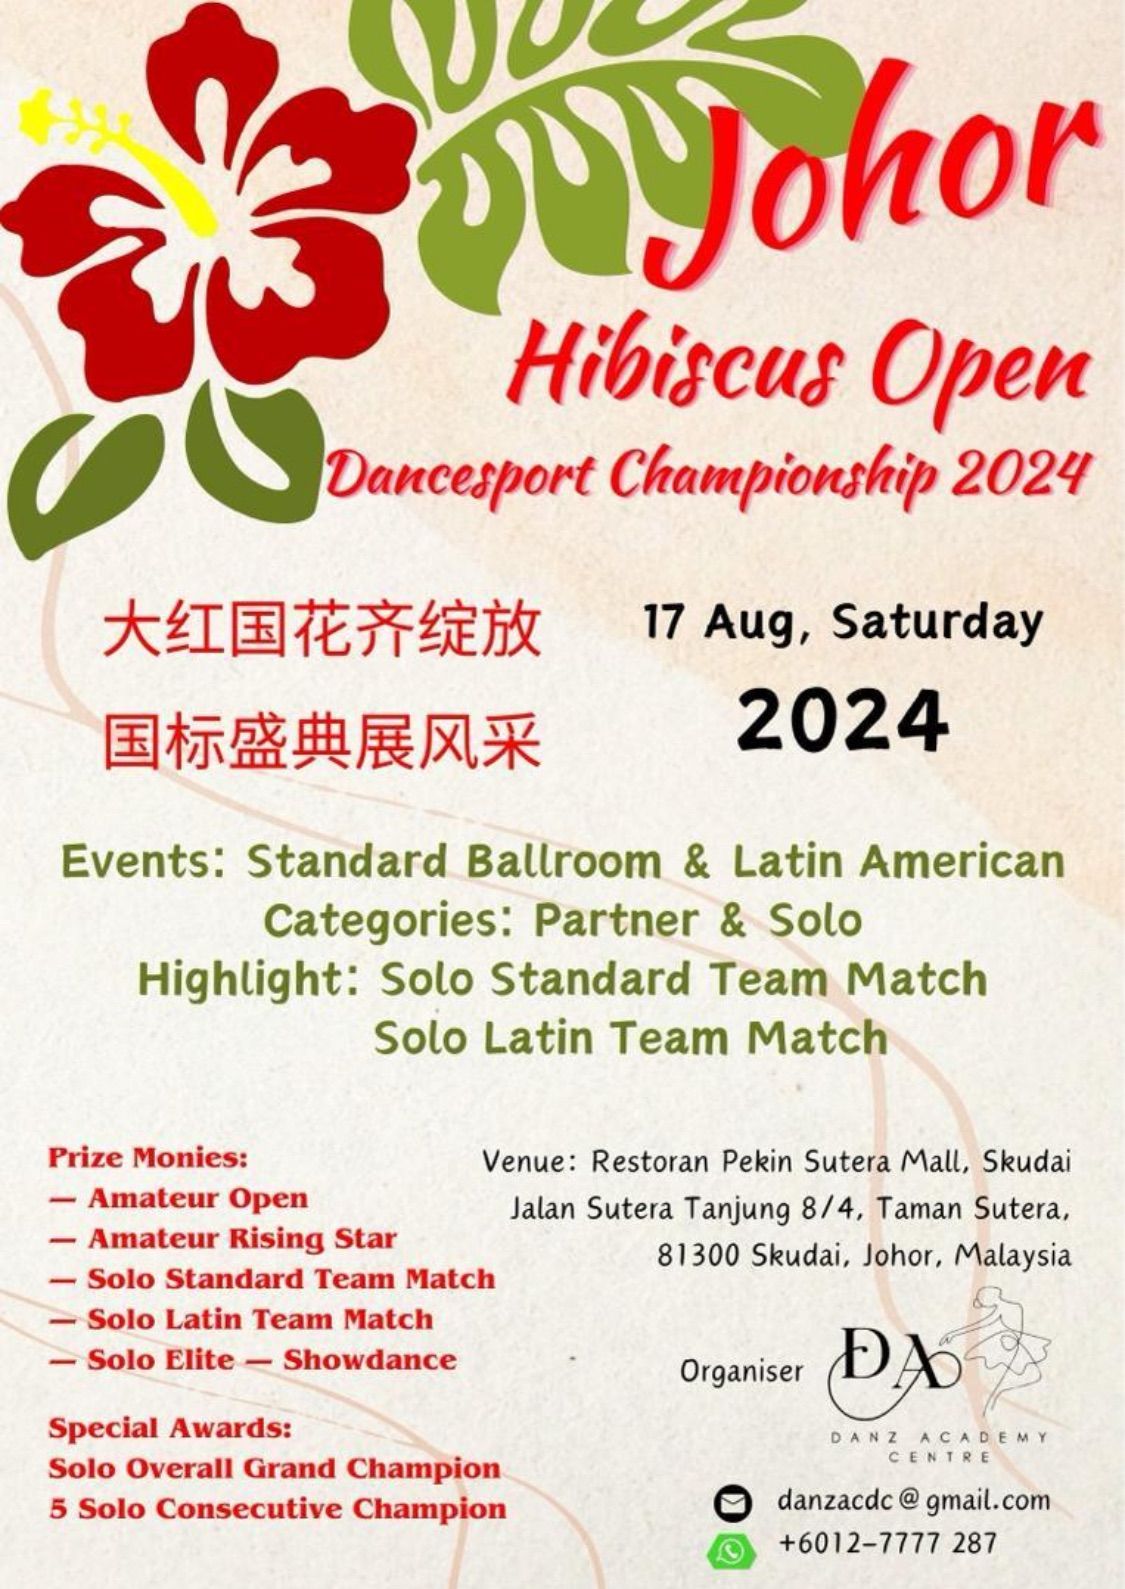 Johor Hibiscus Open Dancesport Championships 2024